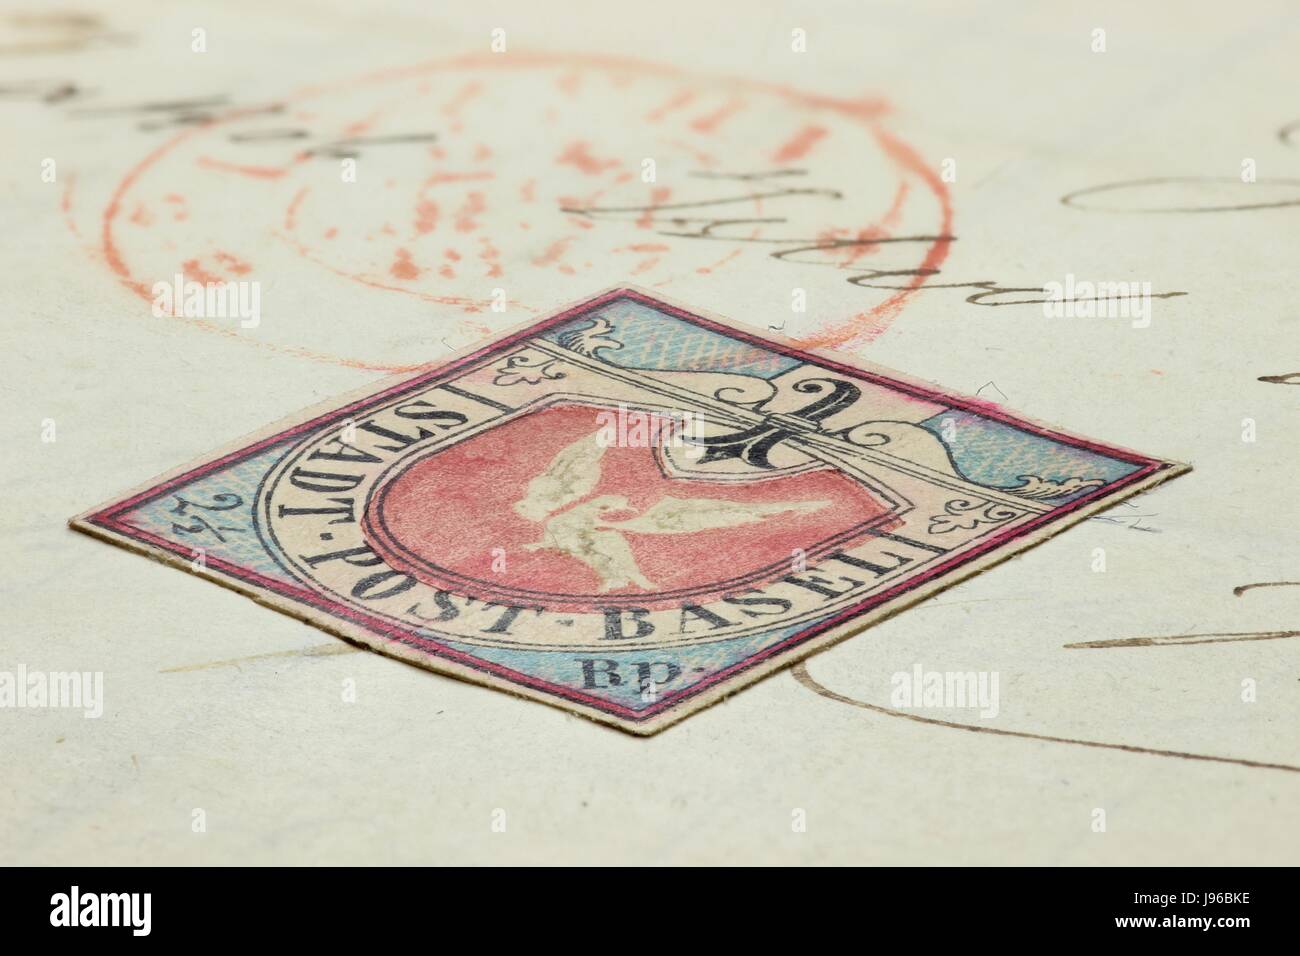 La contraffazione di Colomba di Basilea. La colomba di Basilea è un notevole timbro rilasciato dal cantone svizzero di Basilea ed è stato il primo francobollo tricolore nel mondo. Foto Stock